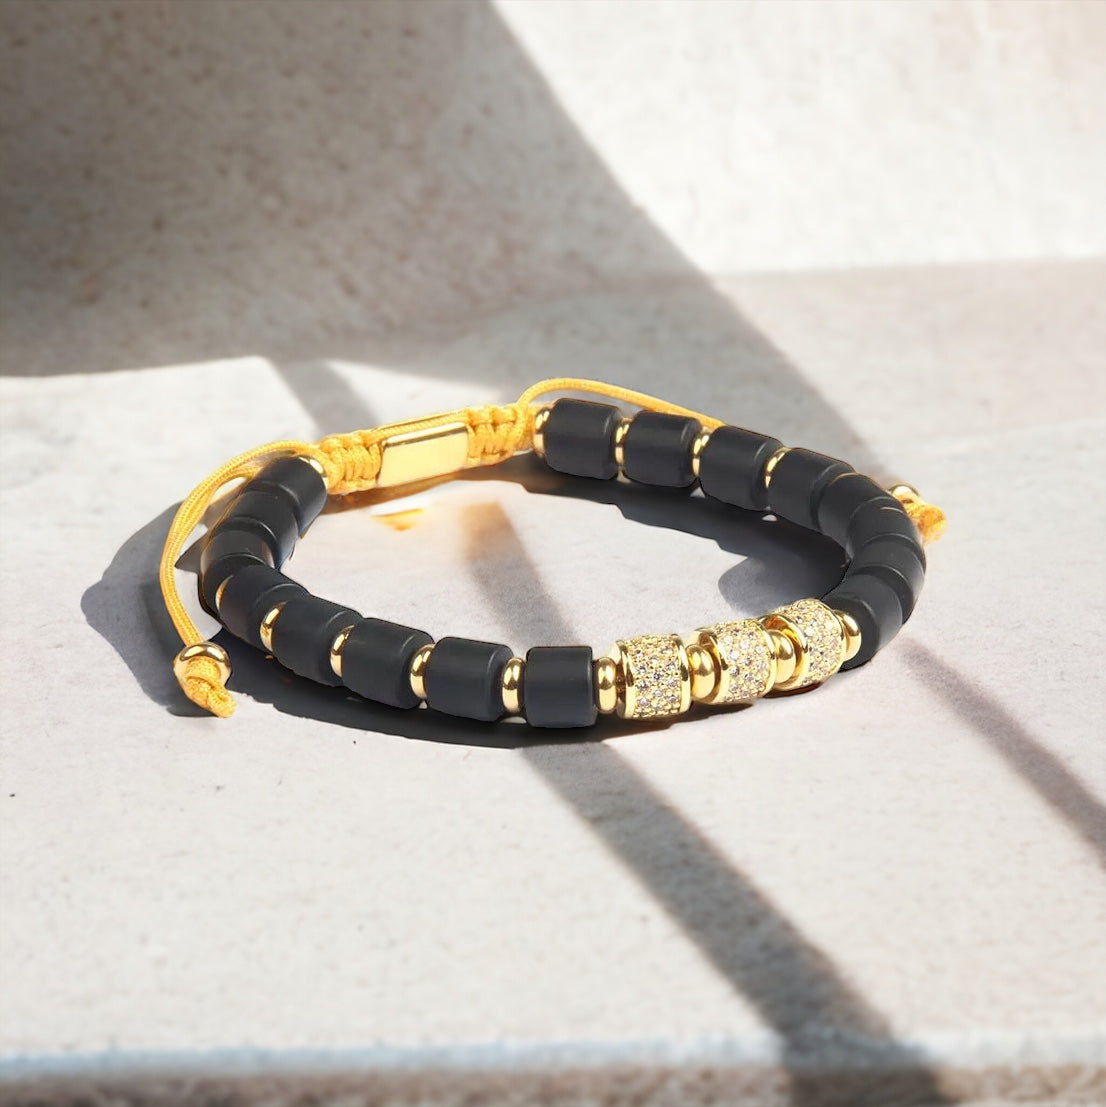 Black Onyx & Gold CZ Beads Bracelet - My Harmony Tree